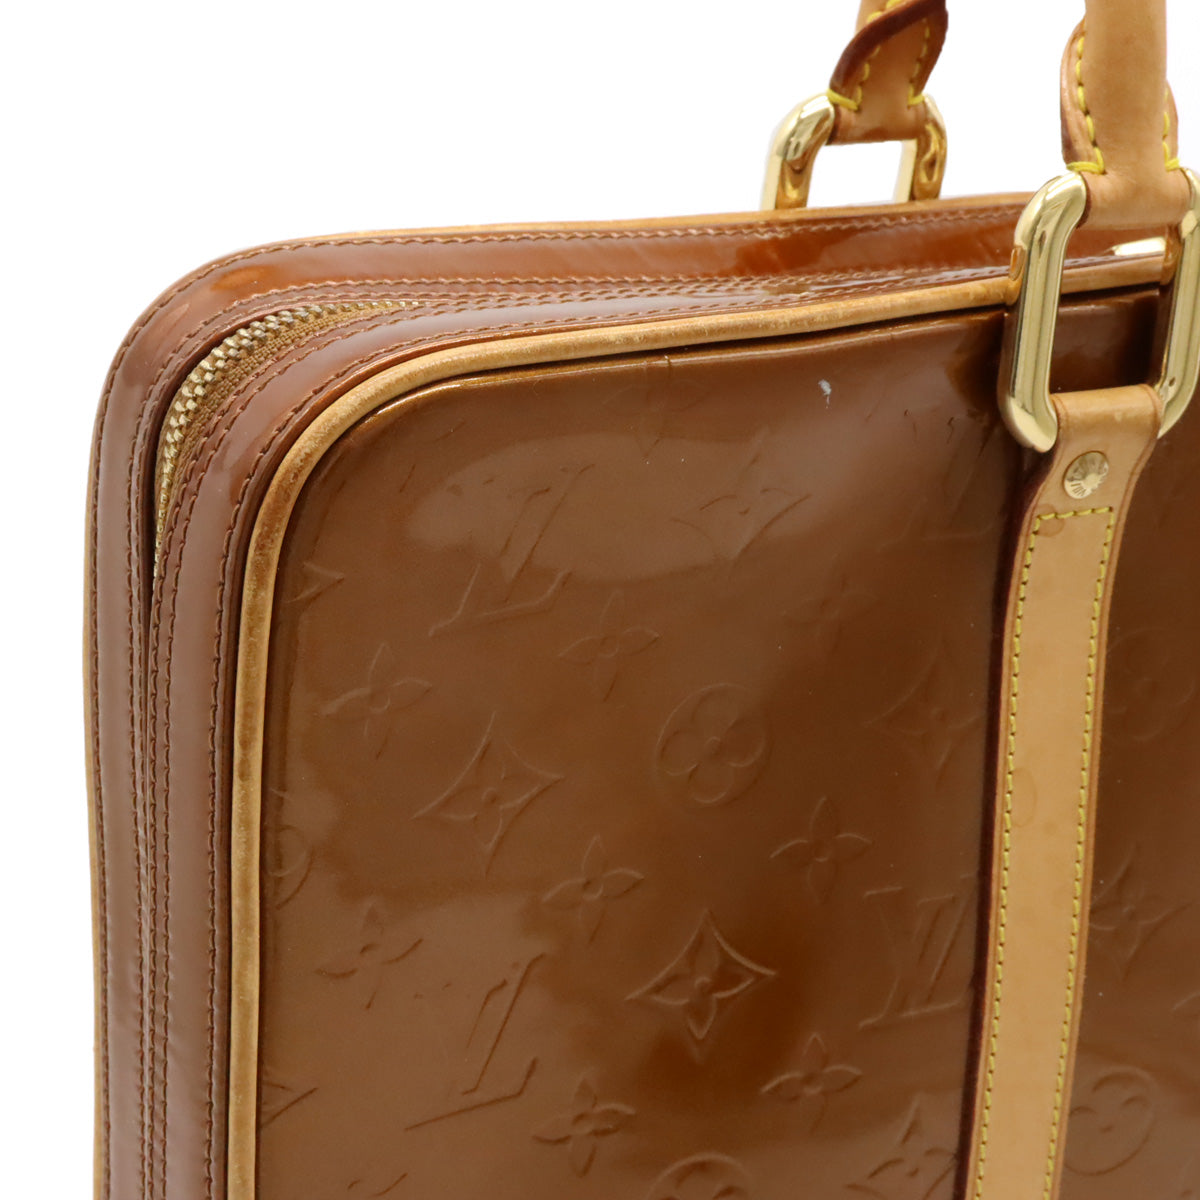 LOUIS VUITTON Louis Vuitton Monogram Vernis Vandam Business Bag Paper Bag Briefcase Emmeline Bronze M91125